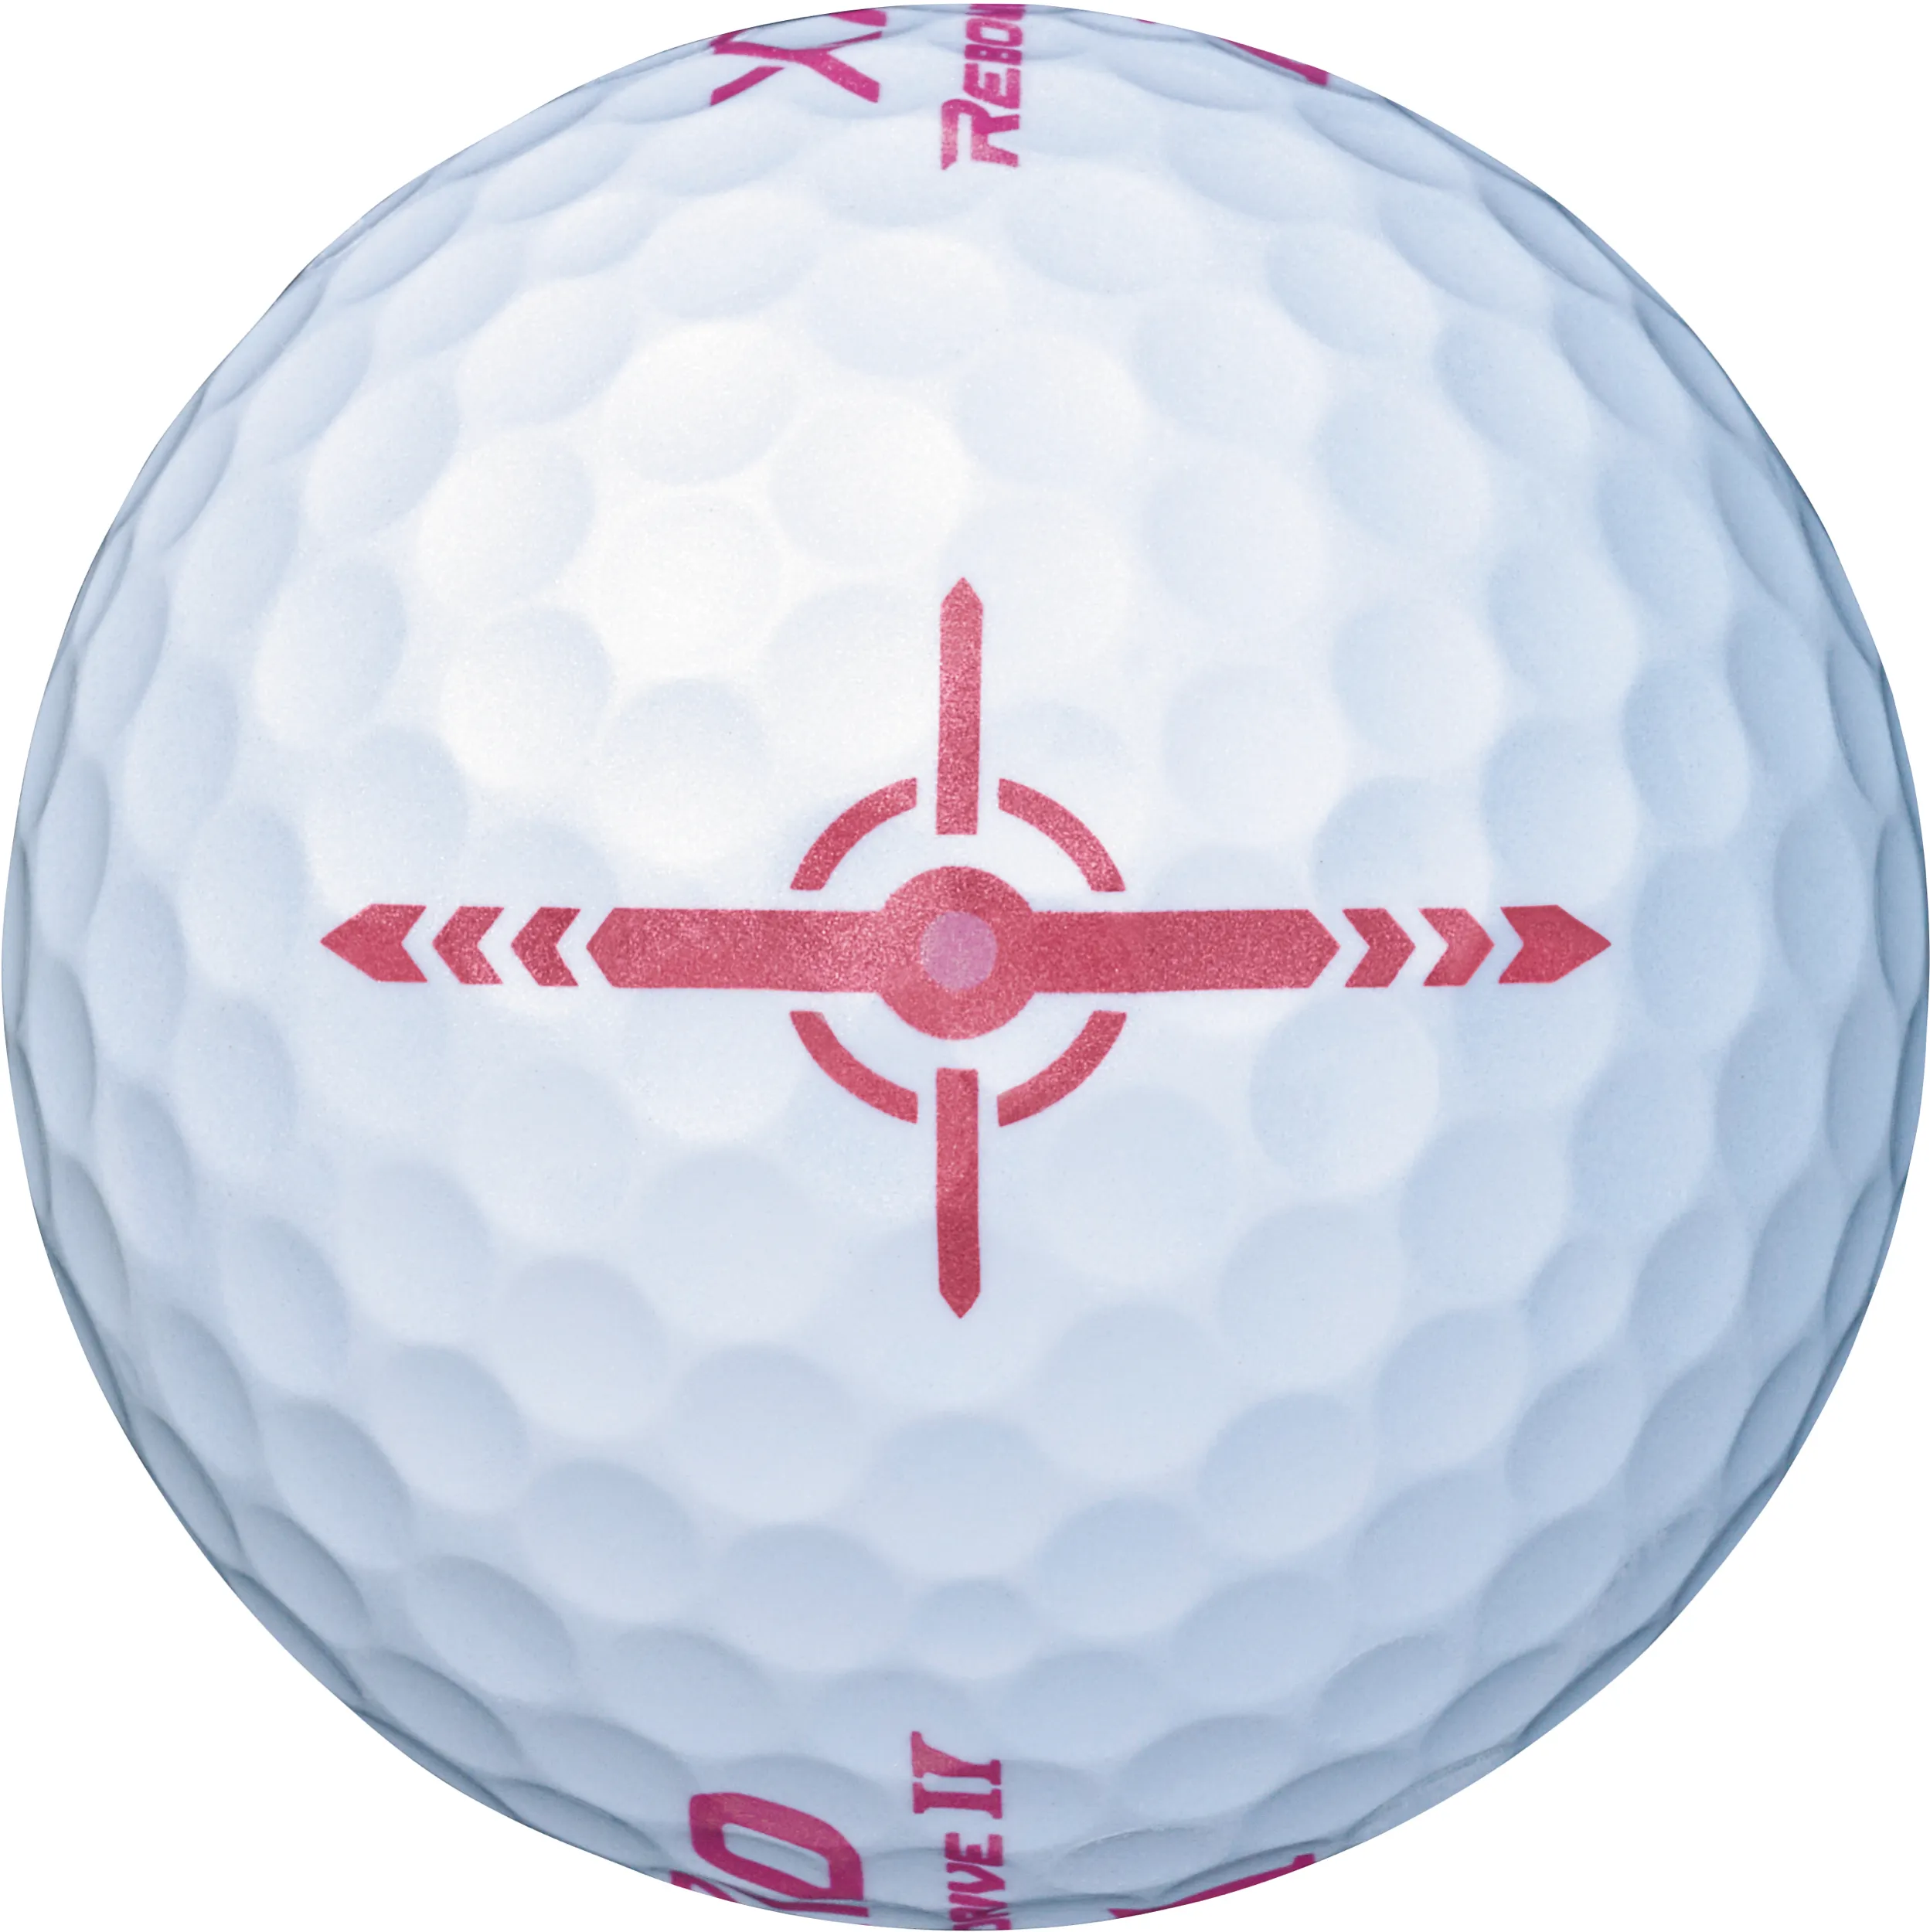 XXIO Rebound Drive II Golfbälle, weiß/rosa